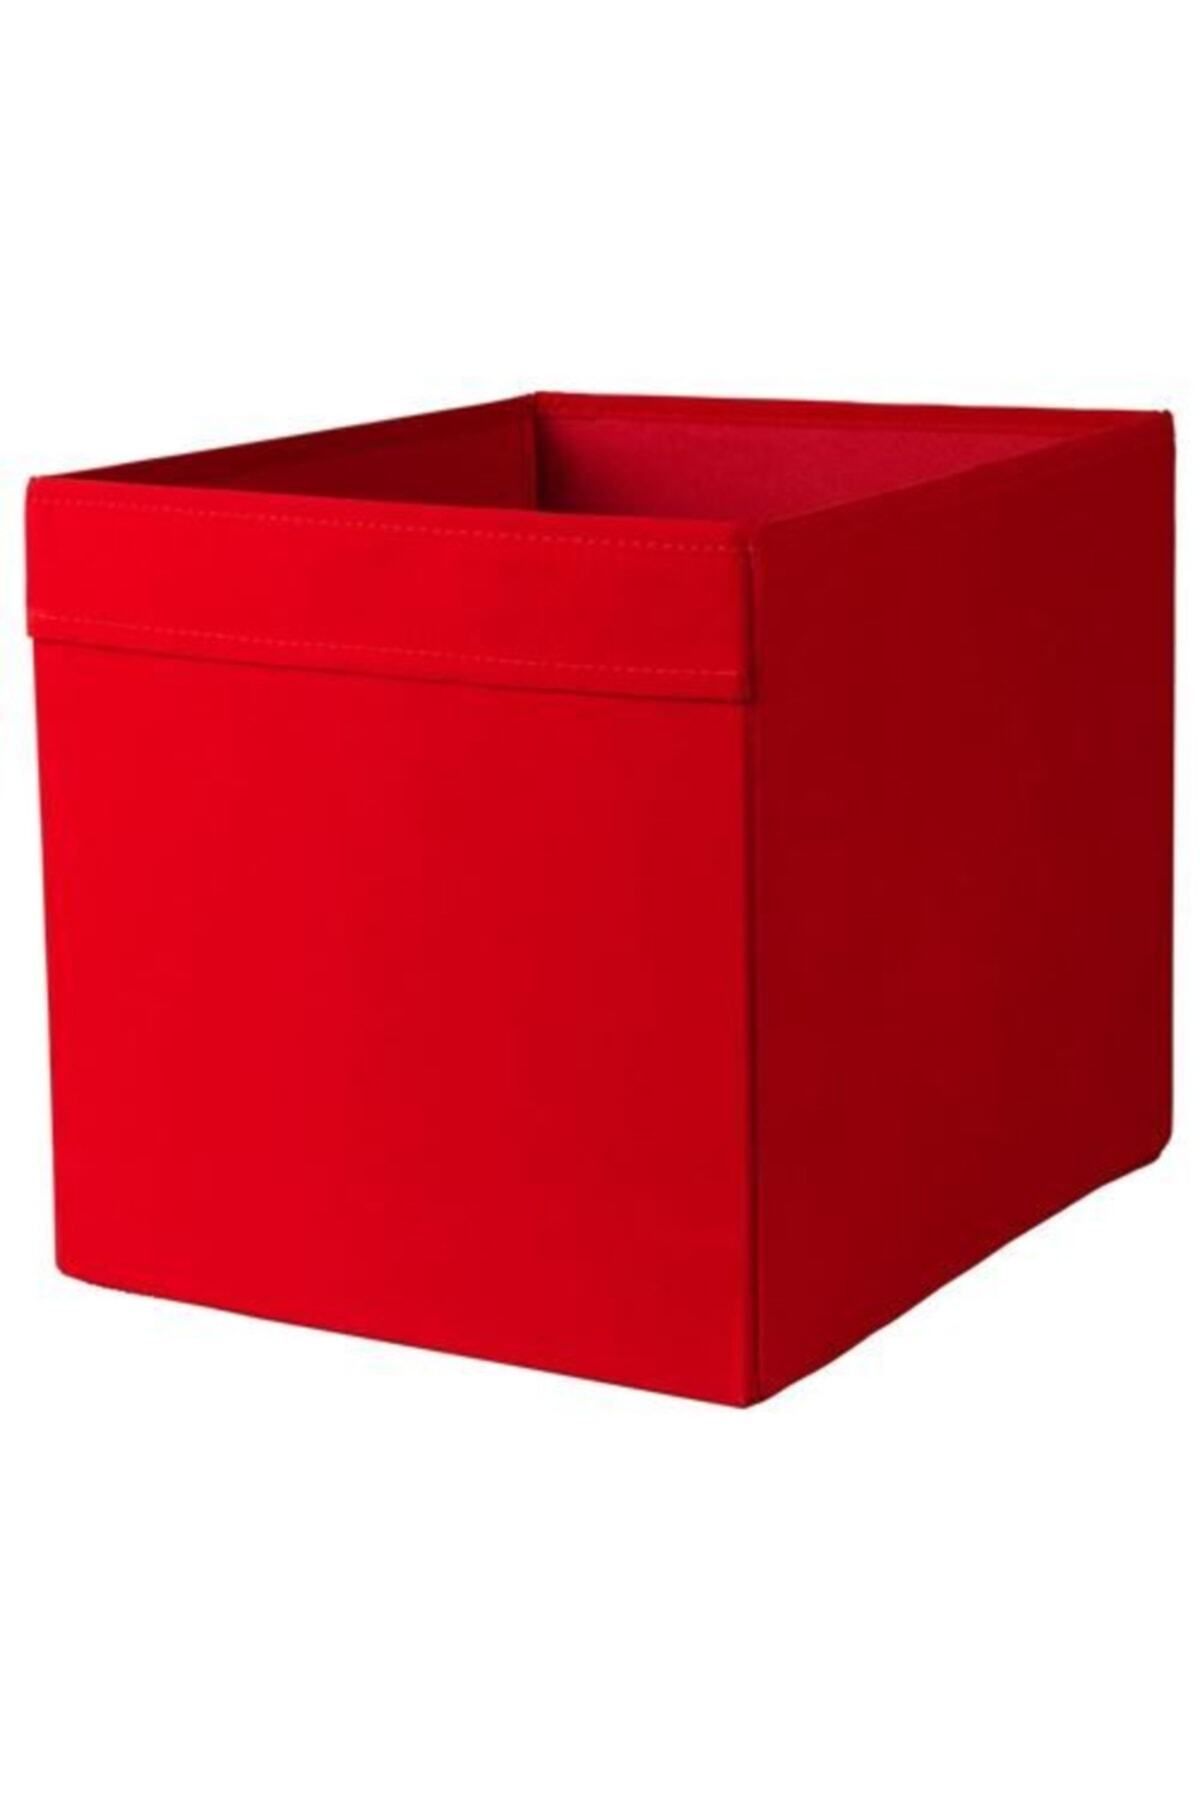 IKEA Dröna Kutu Kırmızı  Ebatlar Genişlik: 33 cm Derinlik: 38 cm Yükseklik: 33 cm